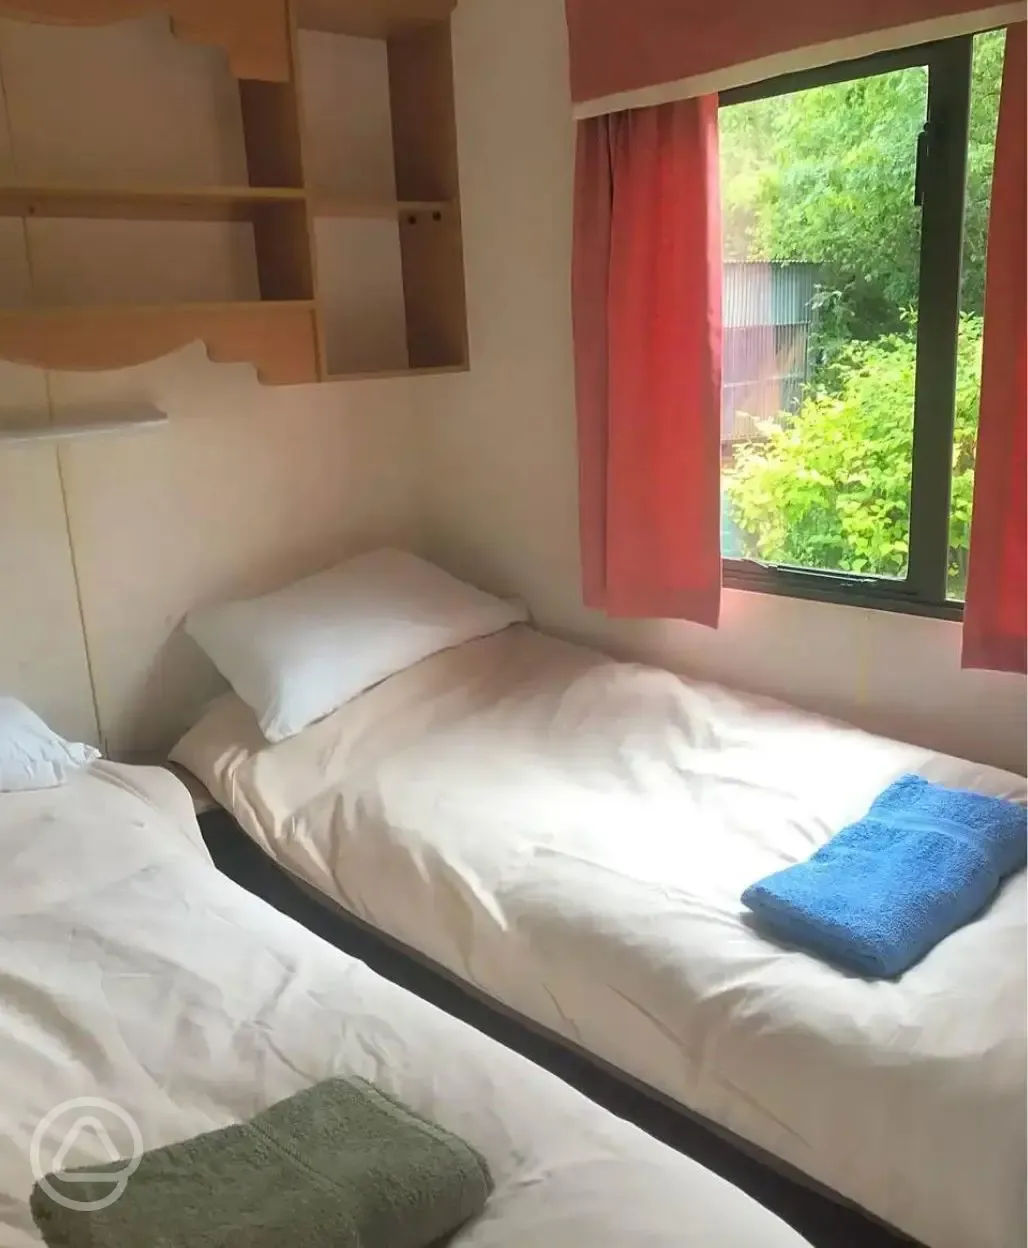 Cabin twin bedroom